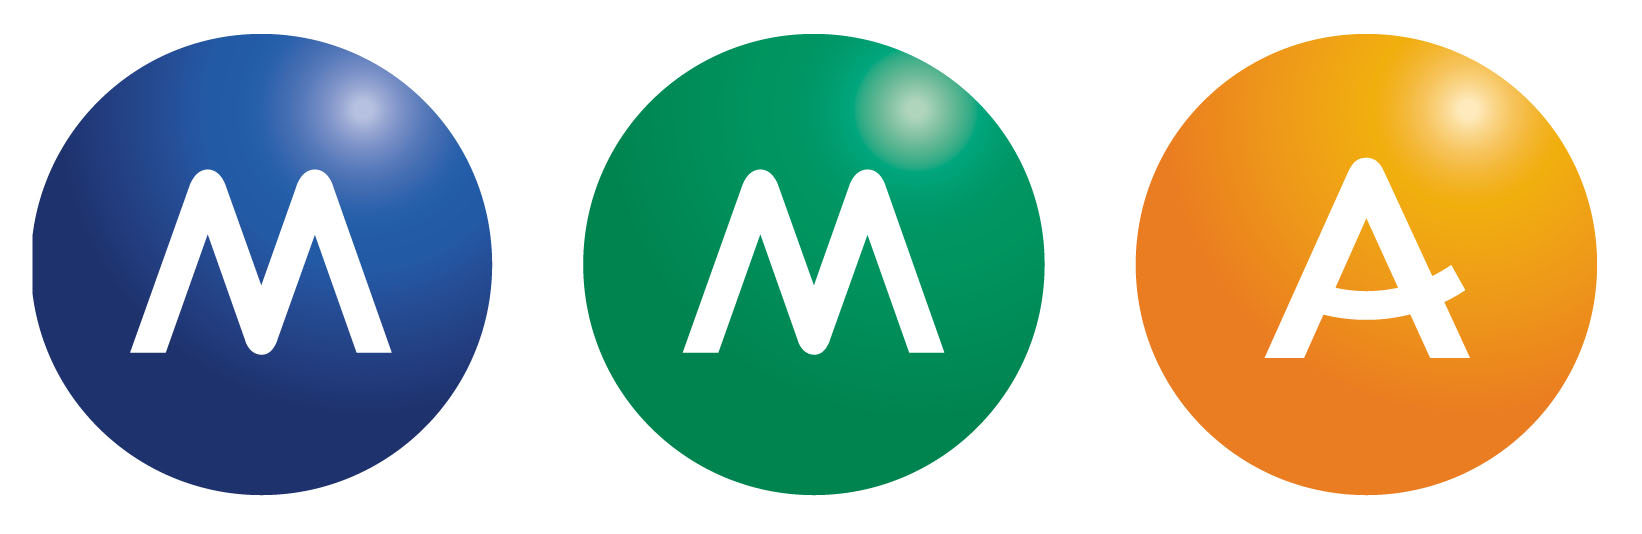 Logo_MMA-2